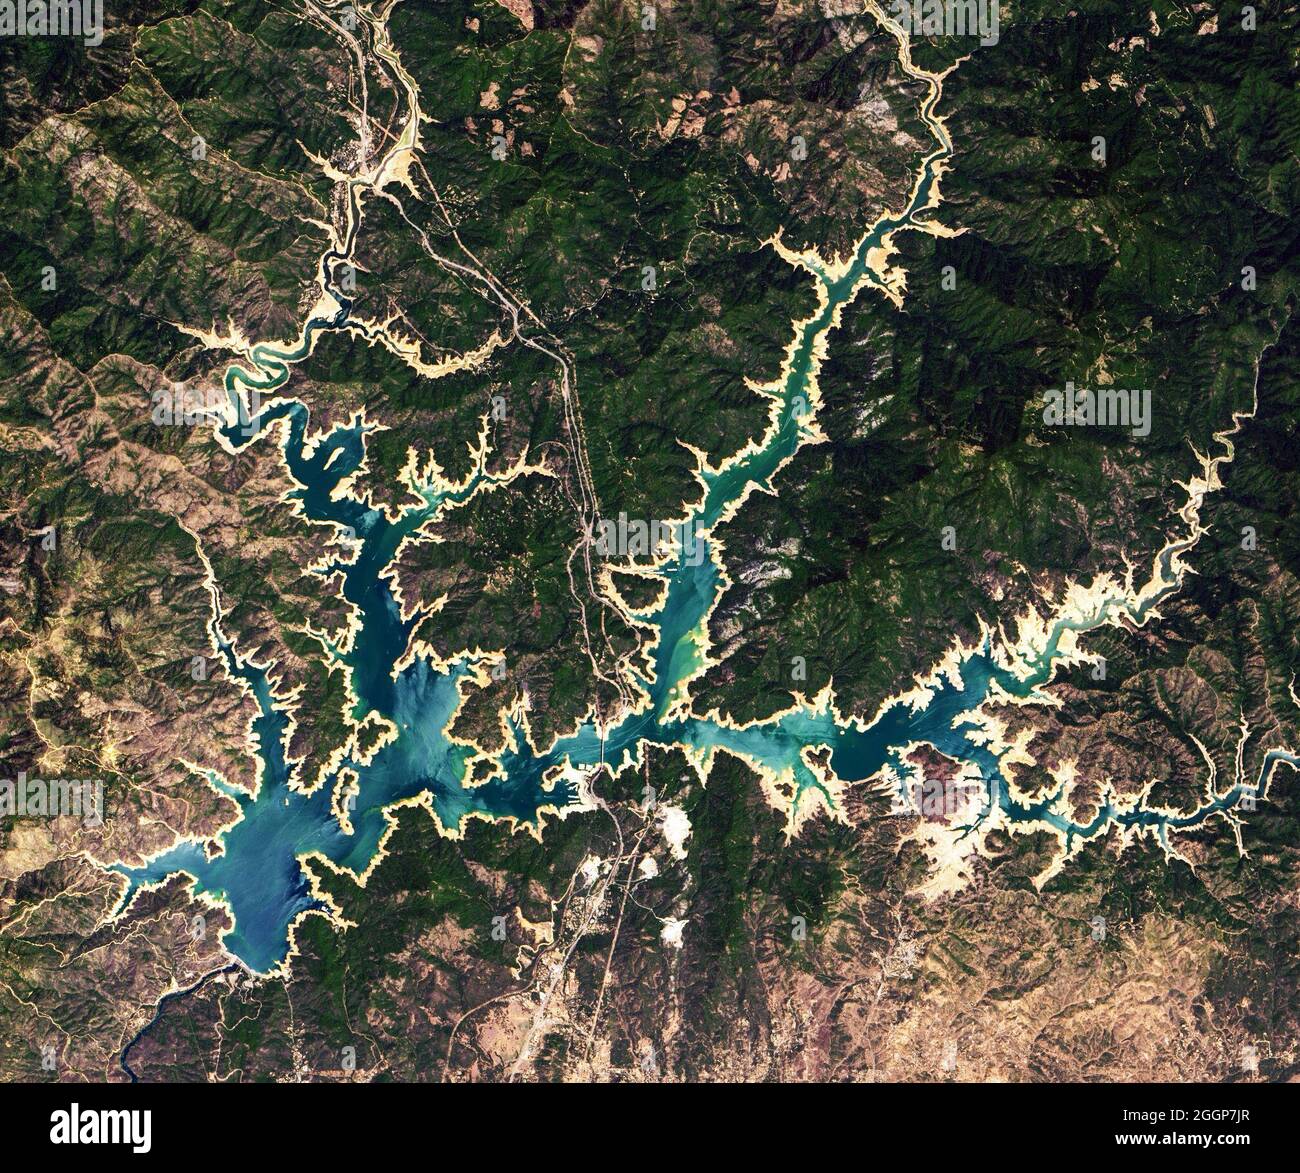 Questa immagine del lago Shasta della California è stata catturata dalla Operational Land Imager (oli) su Landsat 8 il 16 giugno 2021. Foto Stock